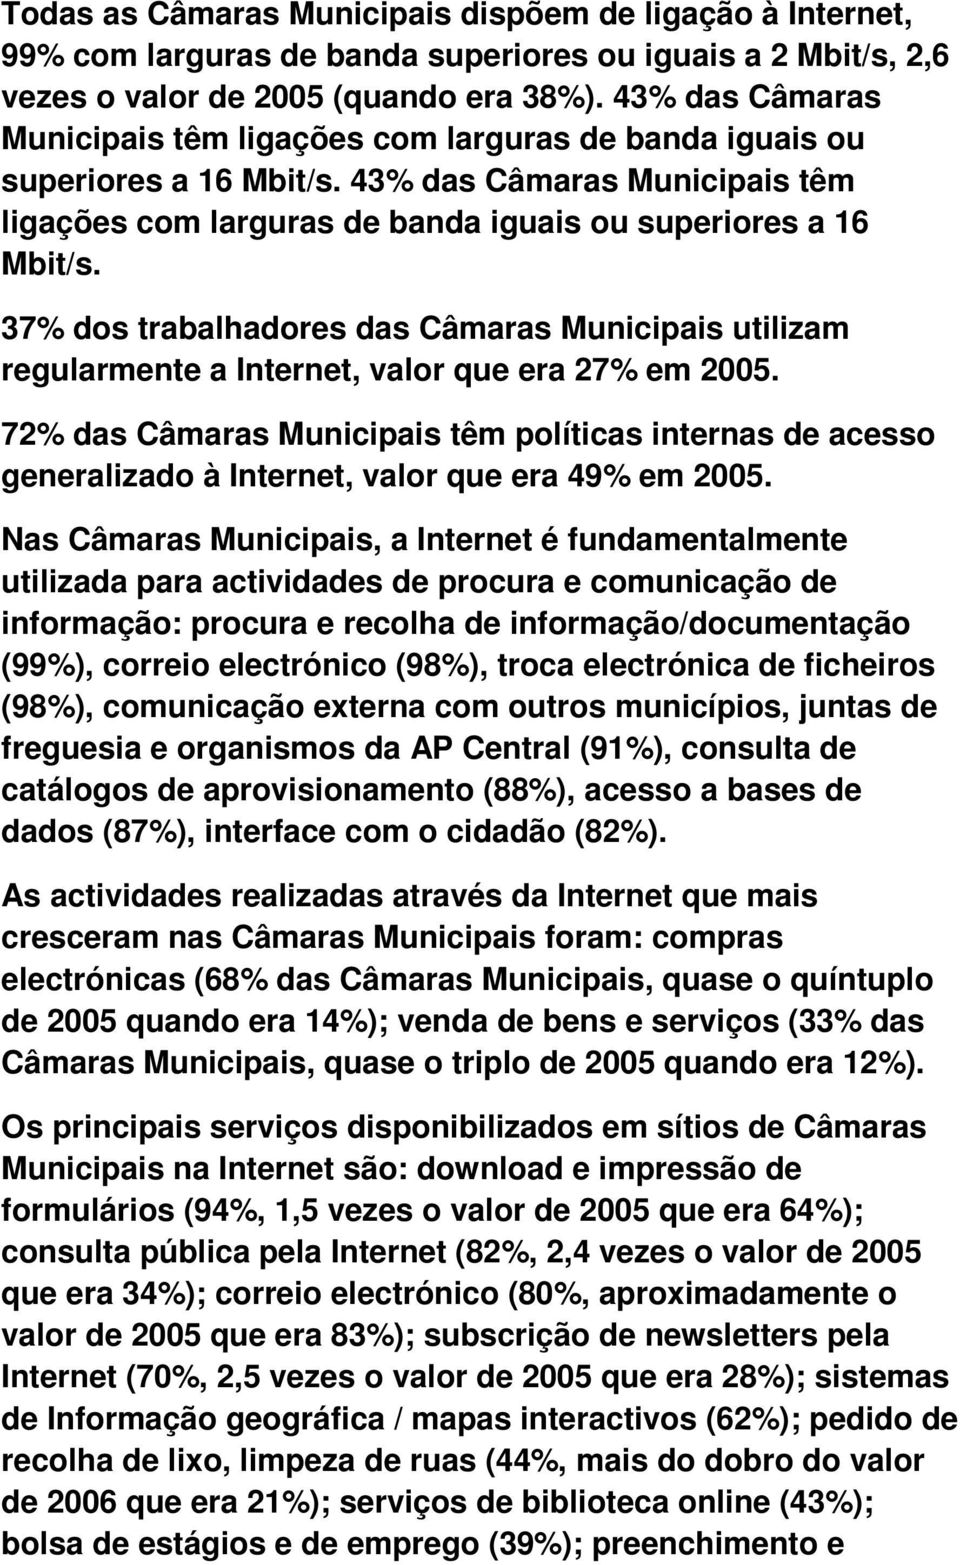 37% dos trabalhadores das Câmaras Municipais utilizam regularmente a Internet, valor que era 27% em 2005.